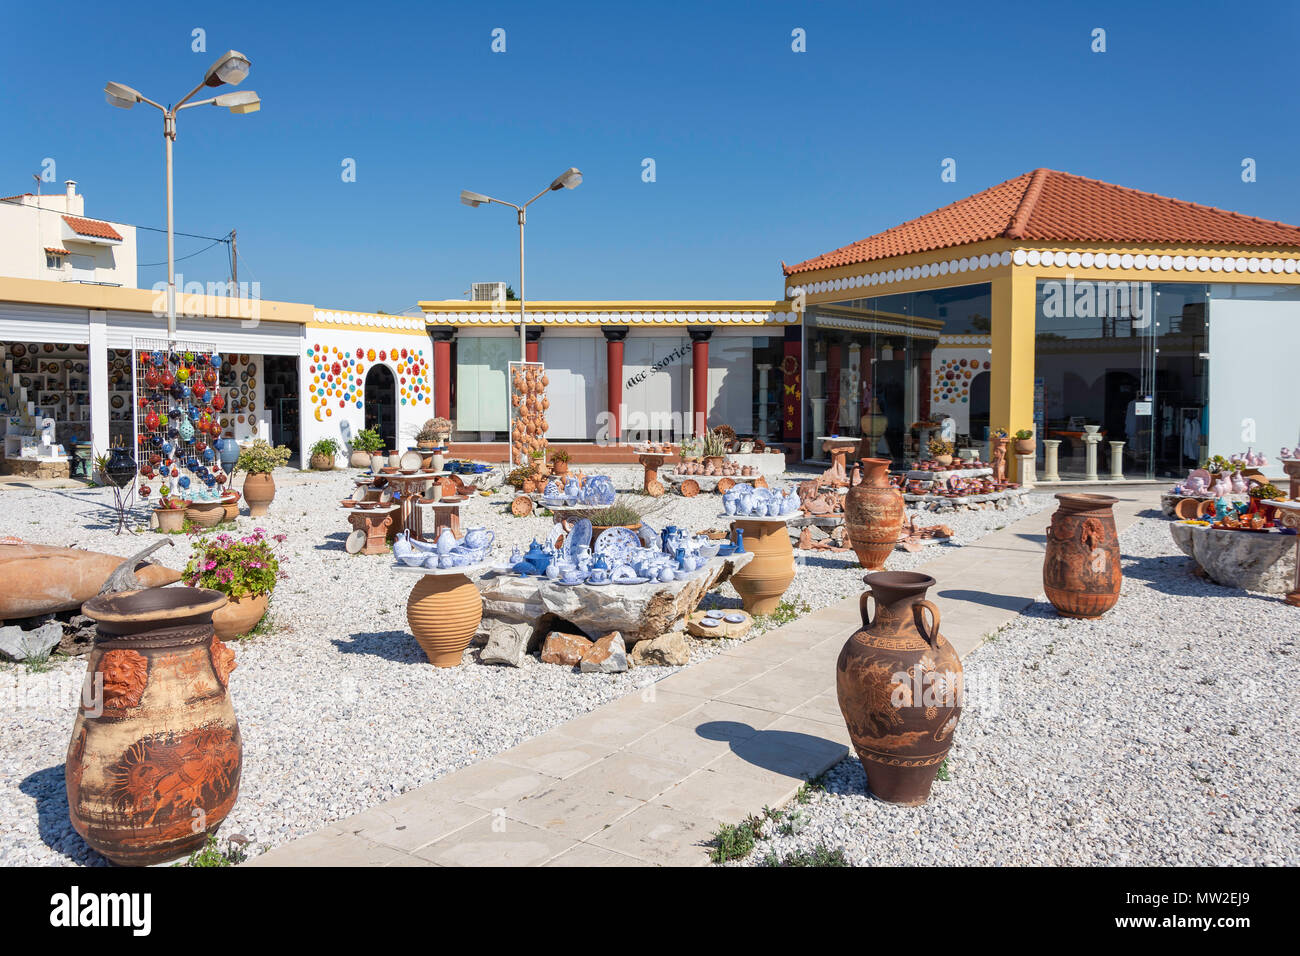 Atelier de céramique, Platanes, Rethymno, Crète (Région) Crète, Grèce Banque D'Images